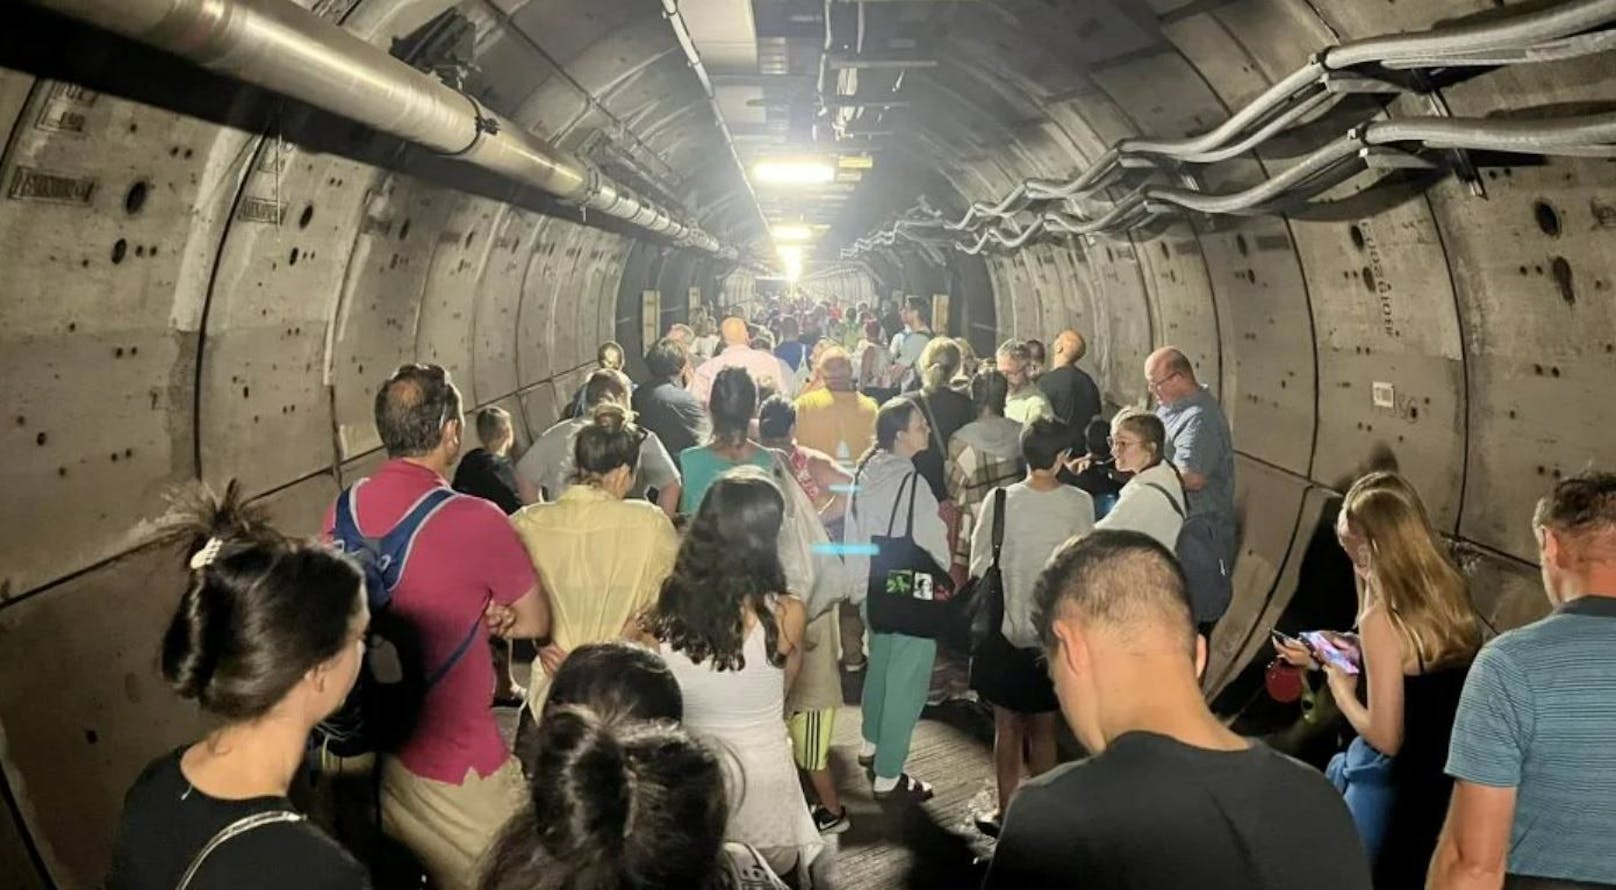 Hunderte Fahrgäste stundenlang in Tunnel eingesperrt